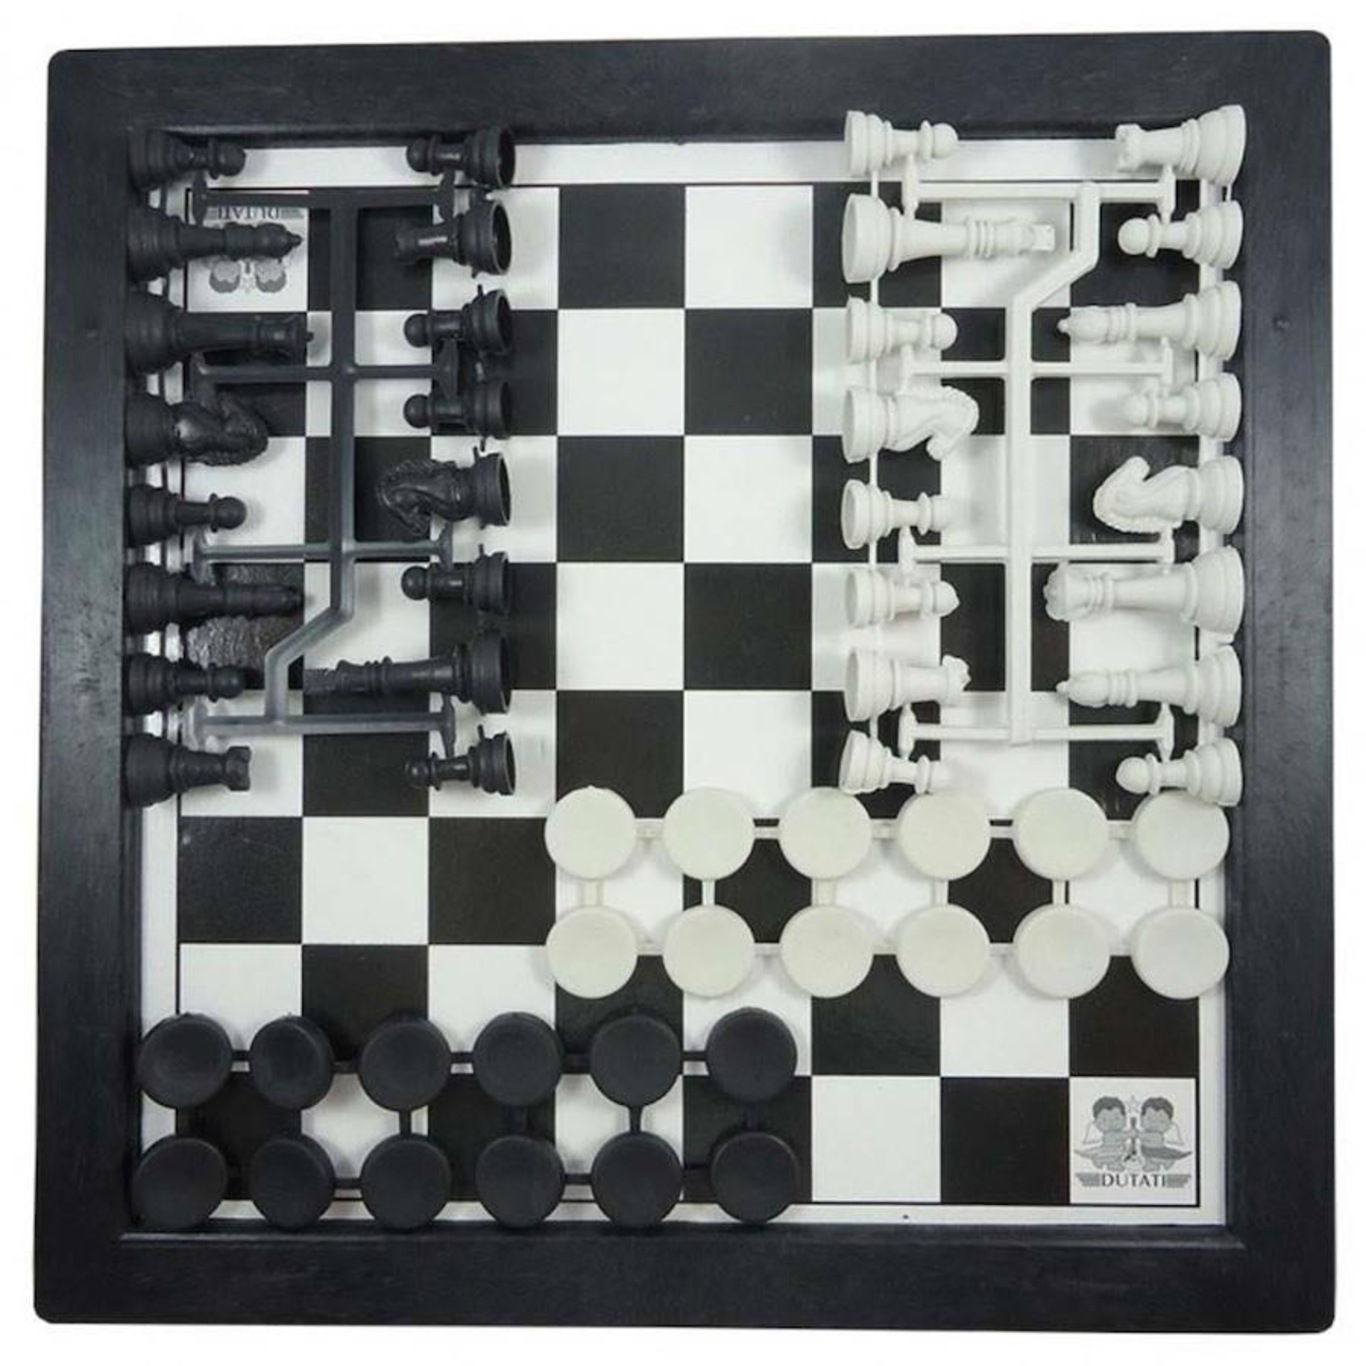 Xadrez,dama e trilha cm estojo 3x1